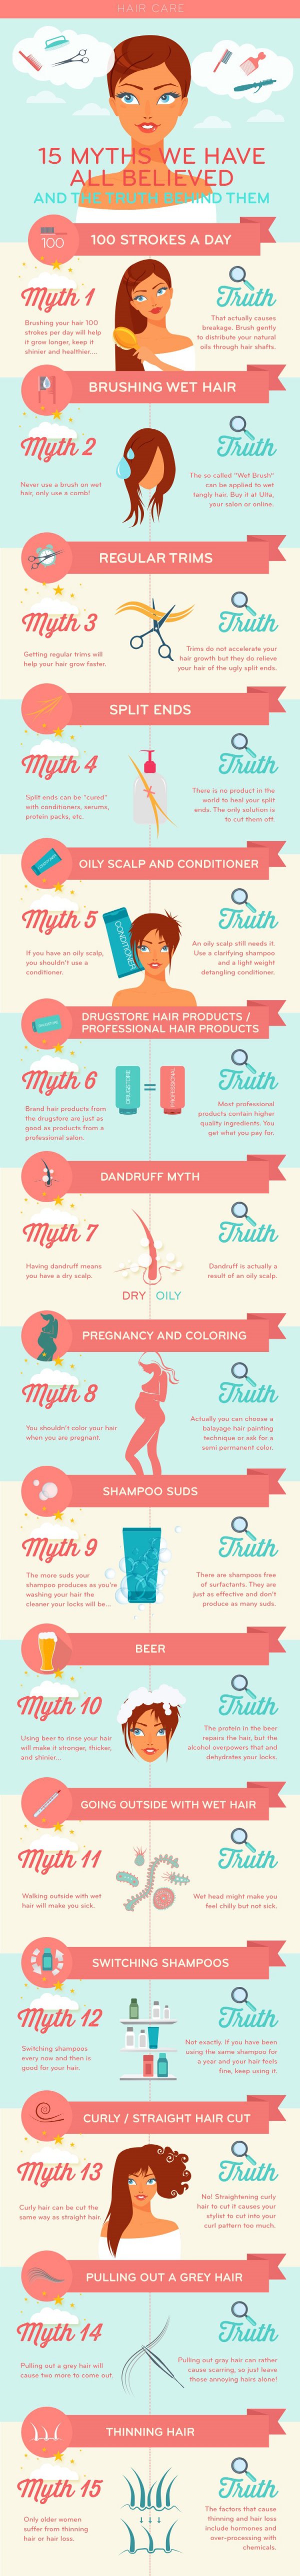 Hair Care Myths and Truth